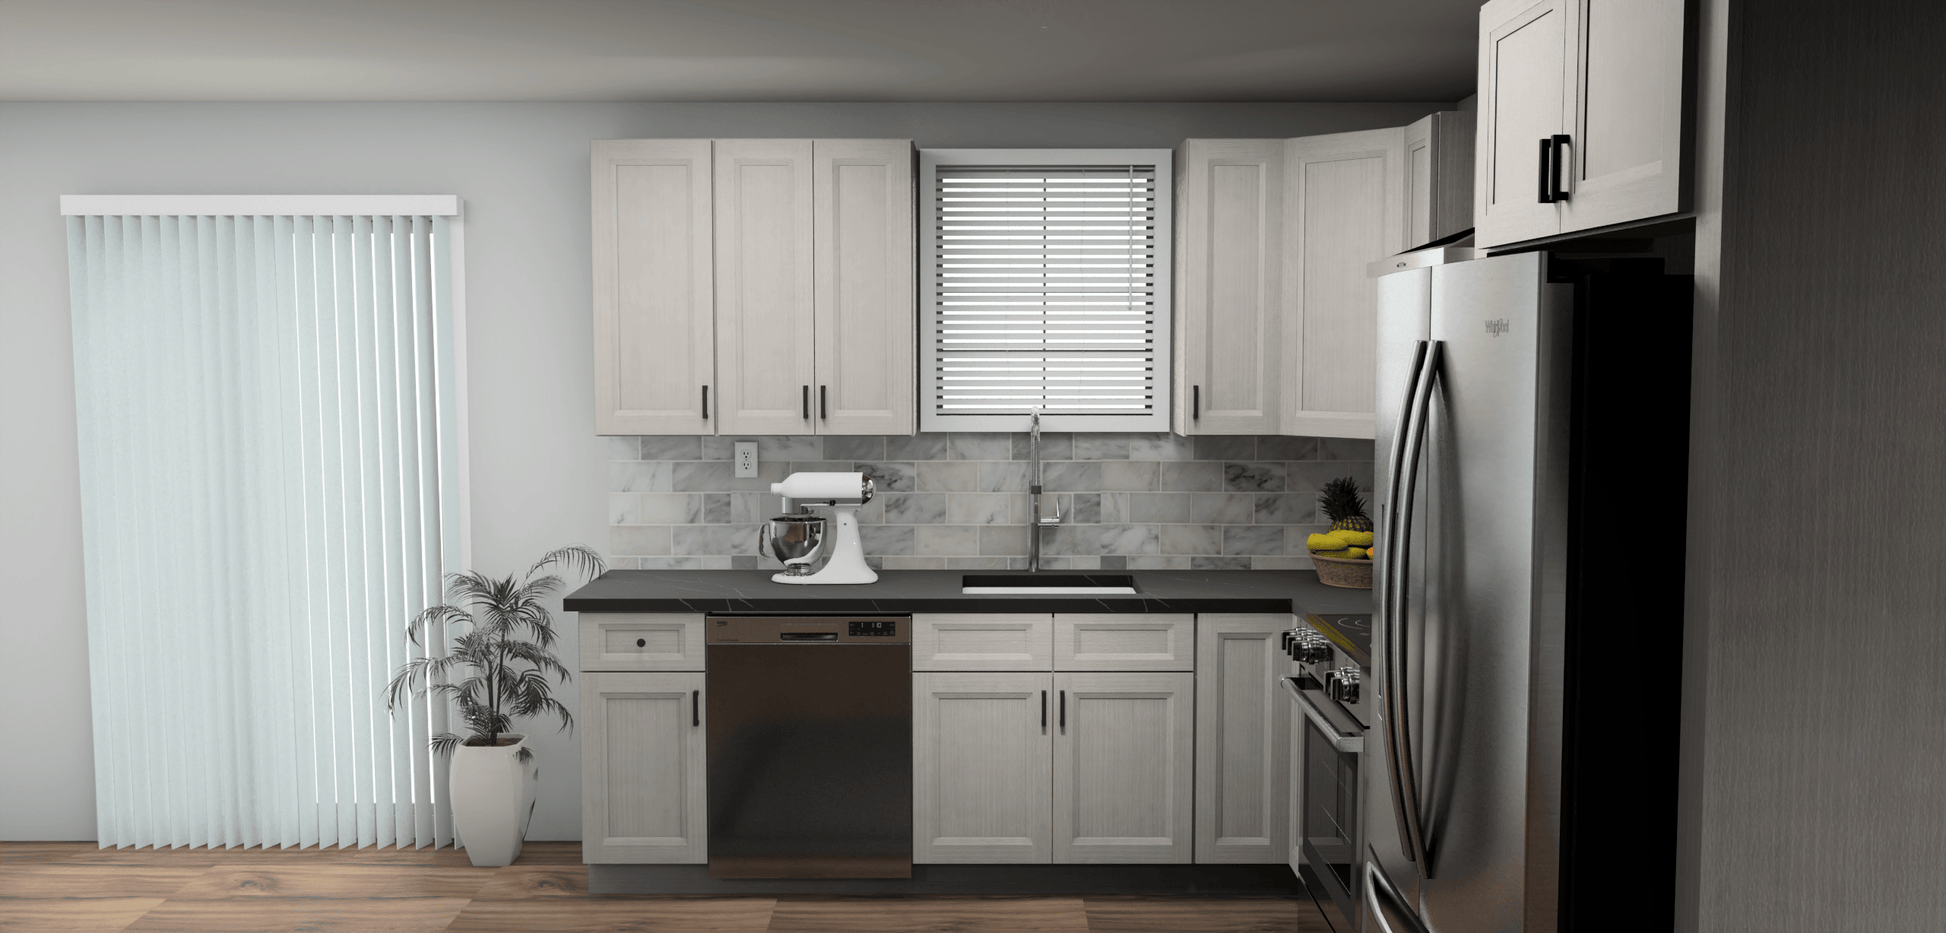 Fabuwood Allure Onyx Horizon 9 x 11 L Shaped Kitchen Side Layout Photo